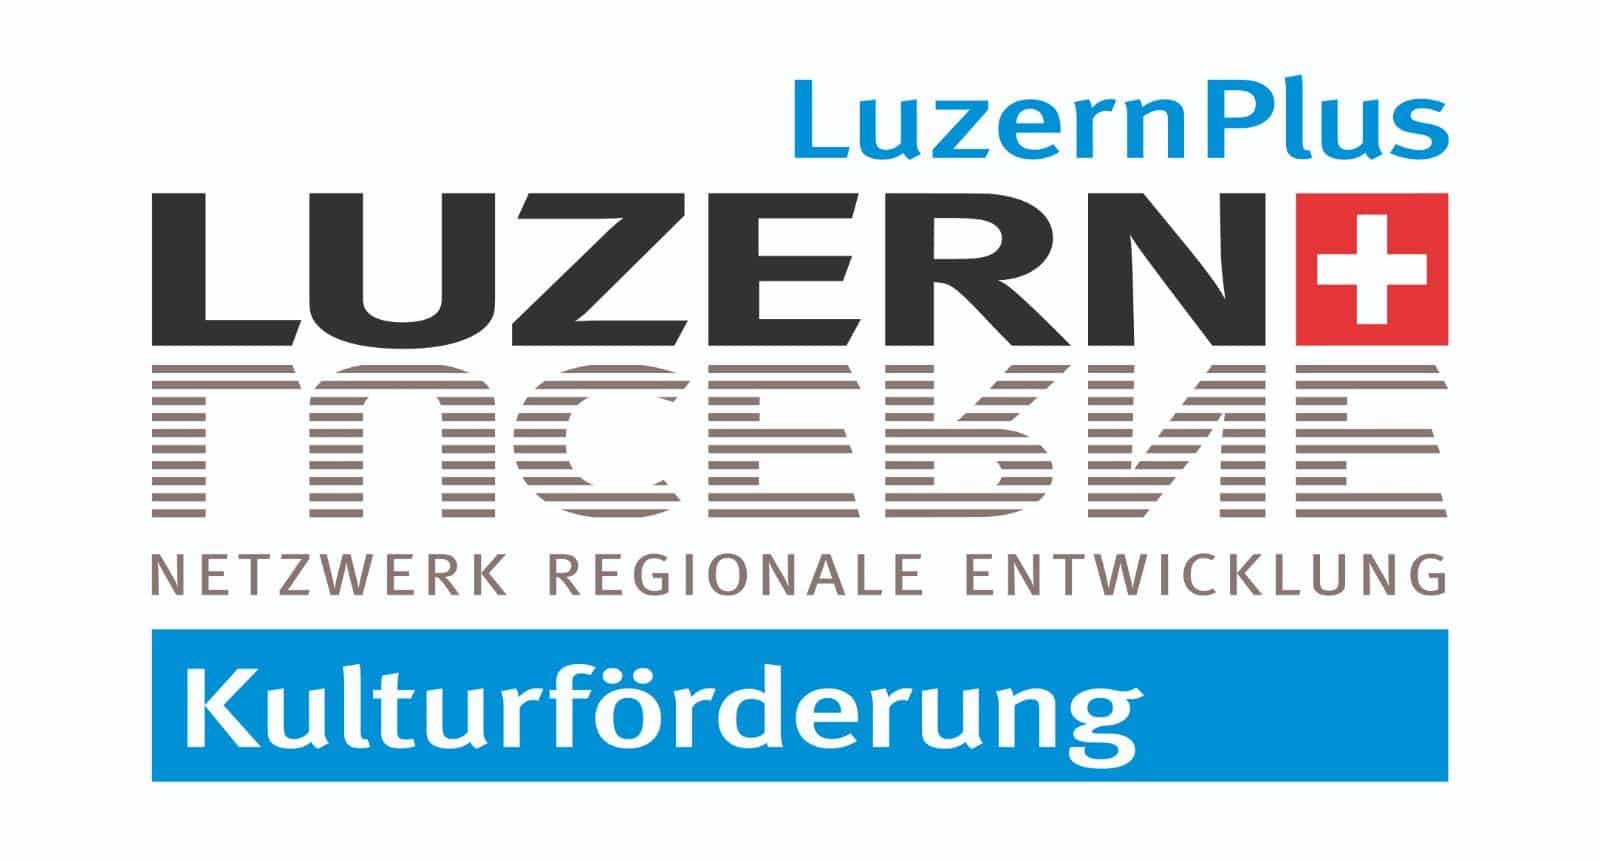 Luzern Plus